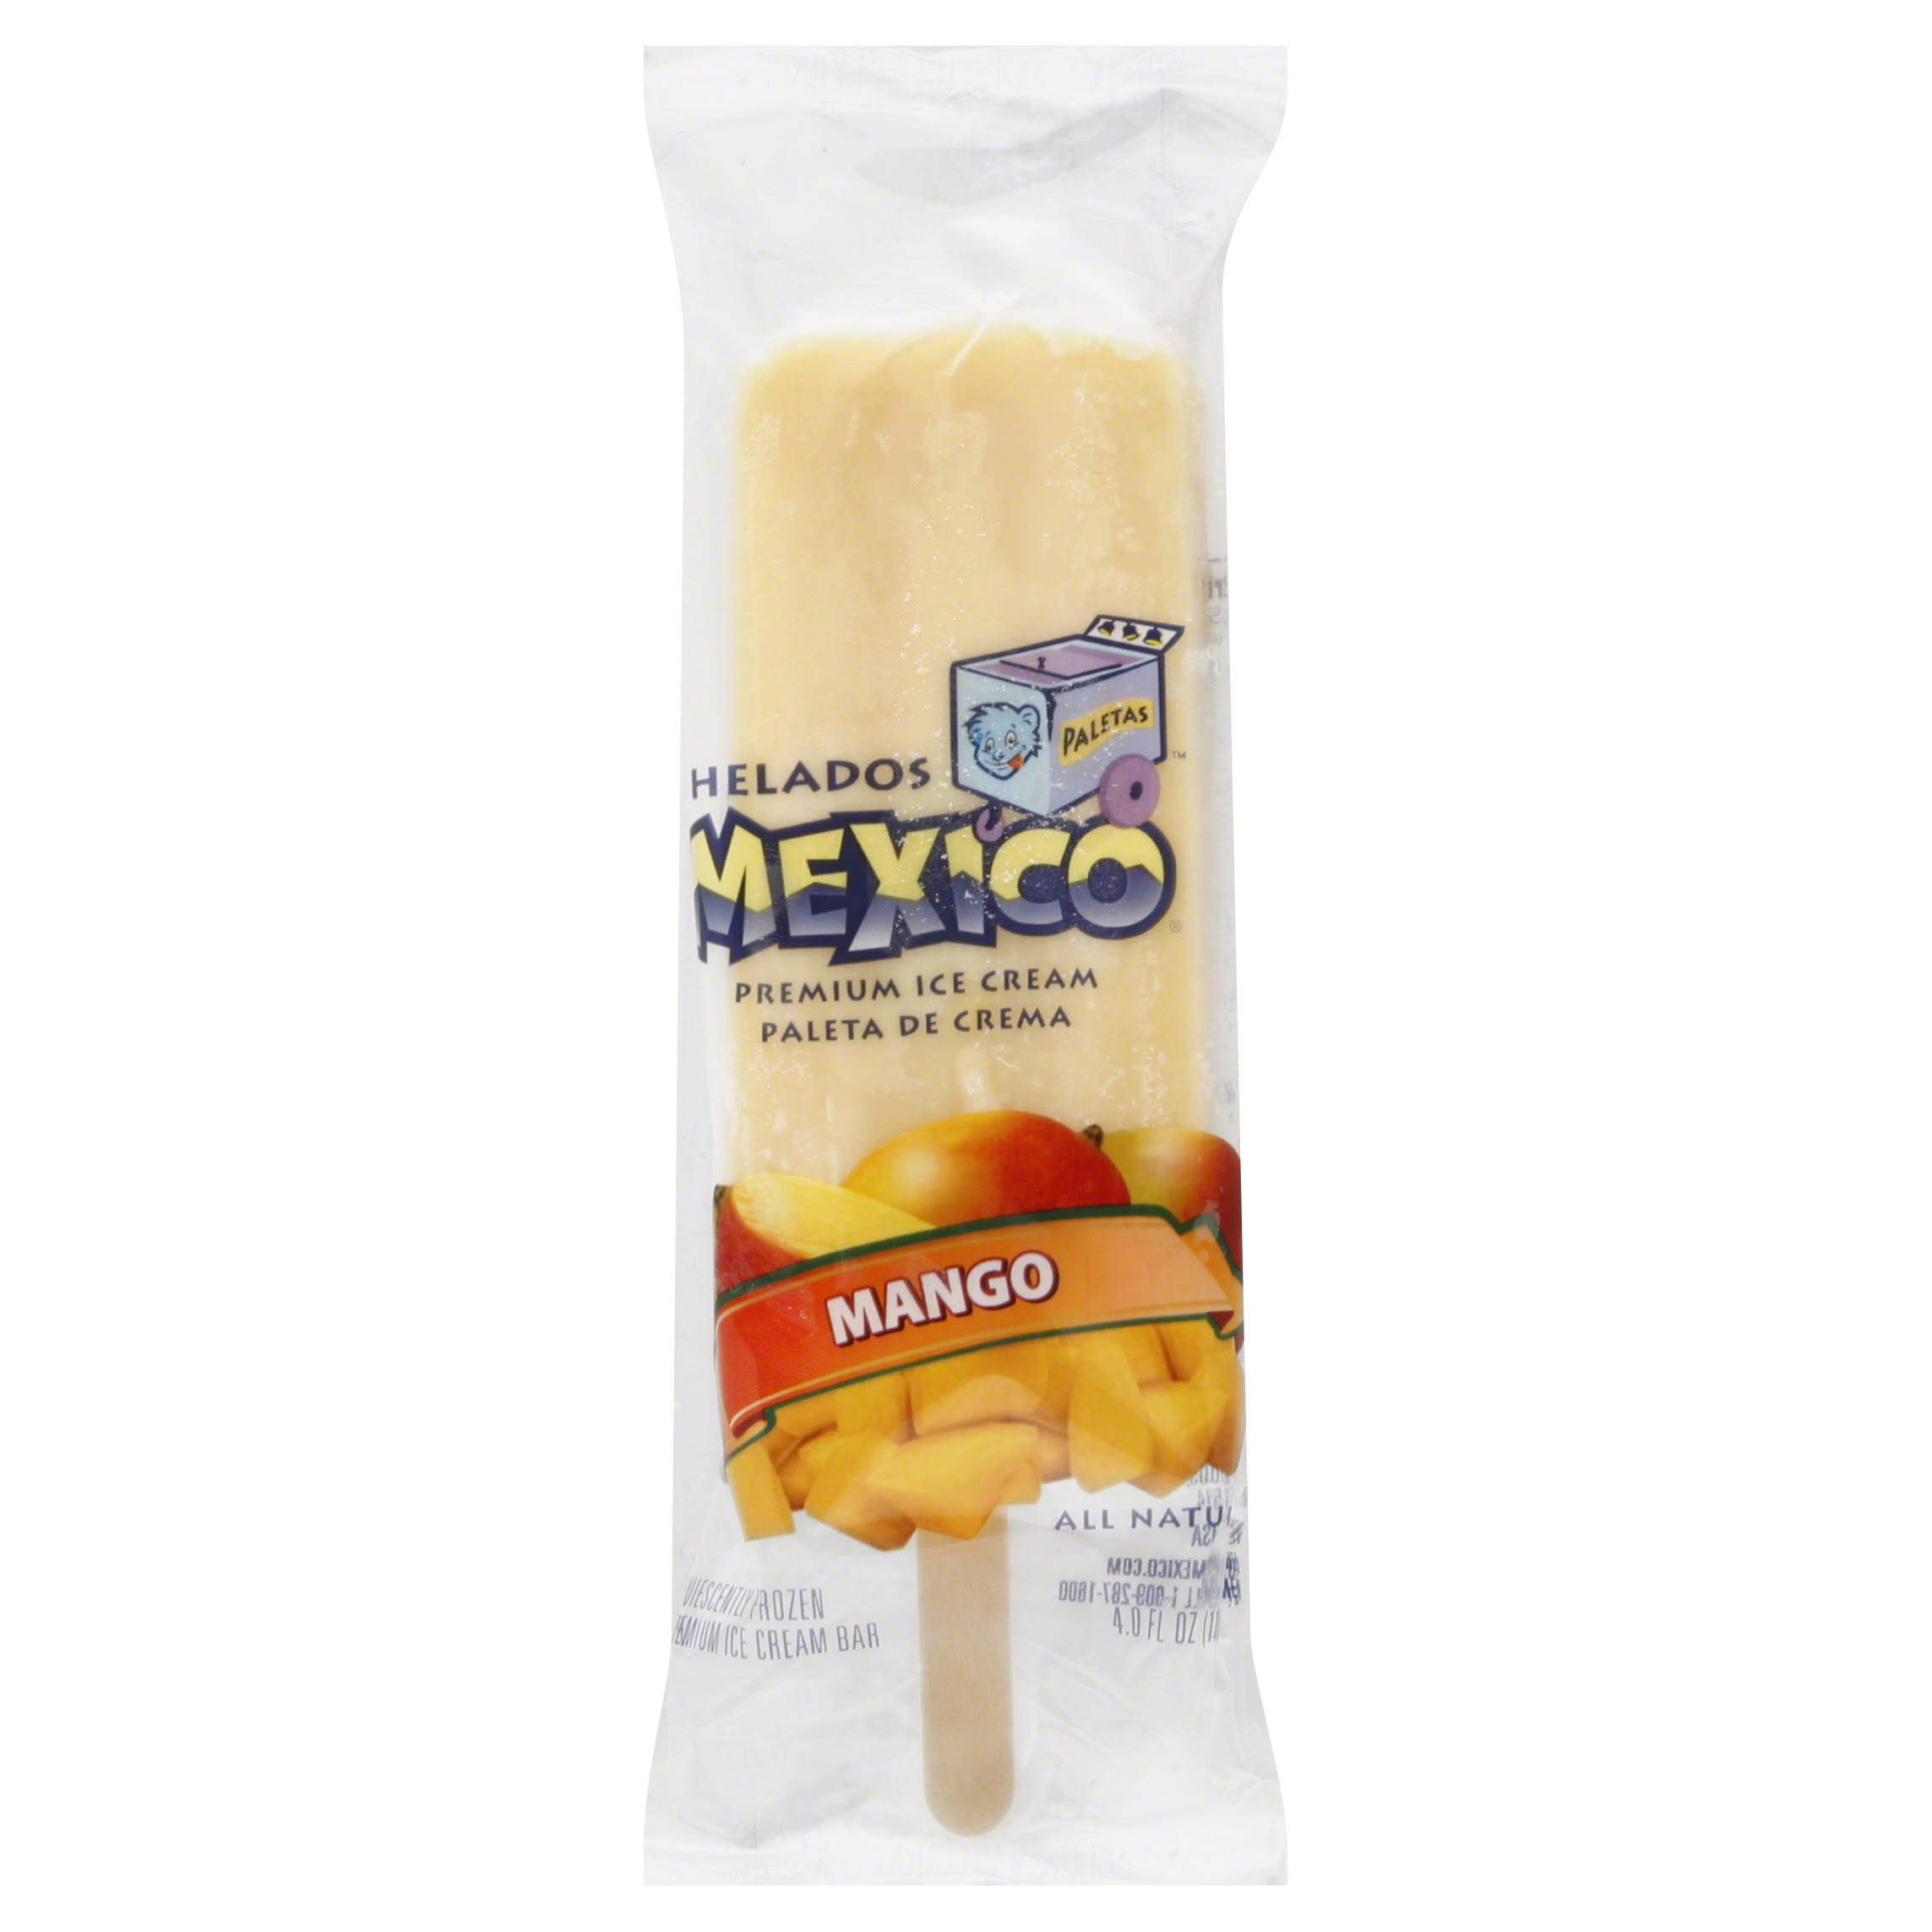 Helados Mexico Premium Ice Cream Bar - Mango, 4oz